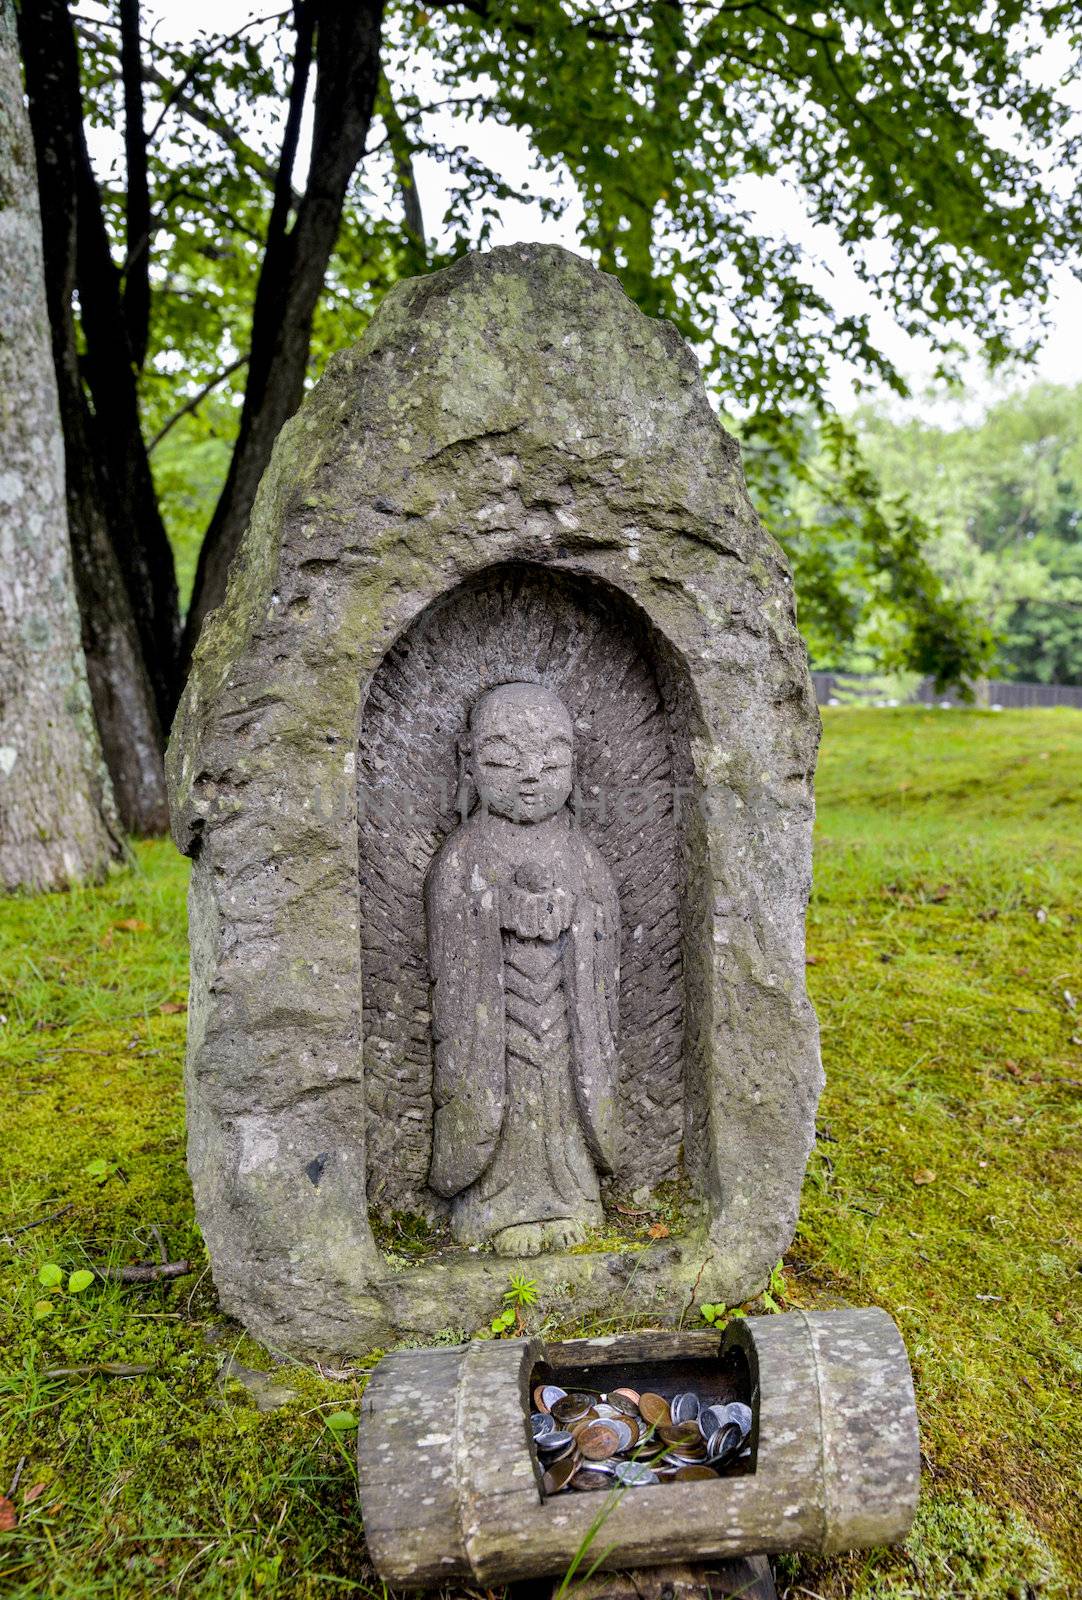 A little stone monk in Japan by gjeerawut